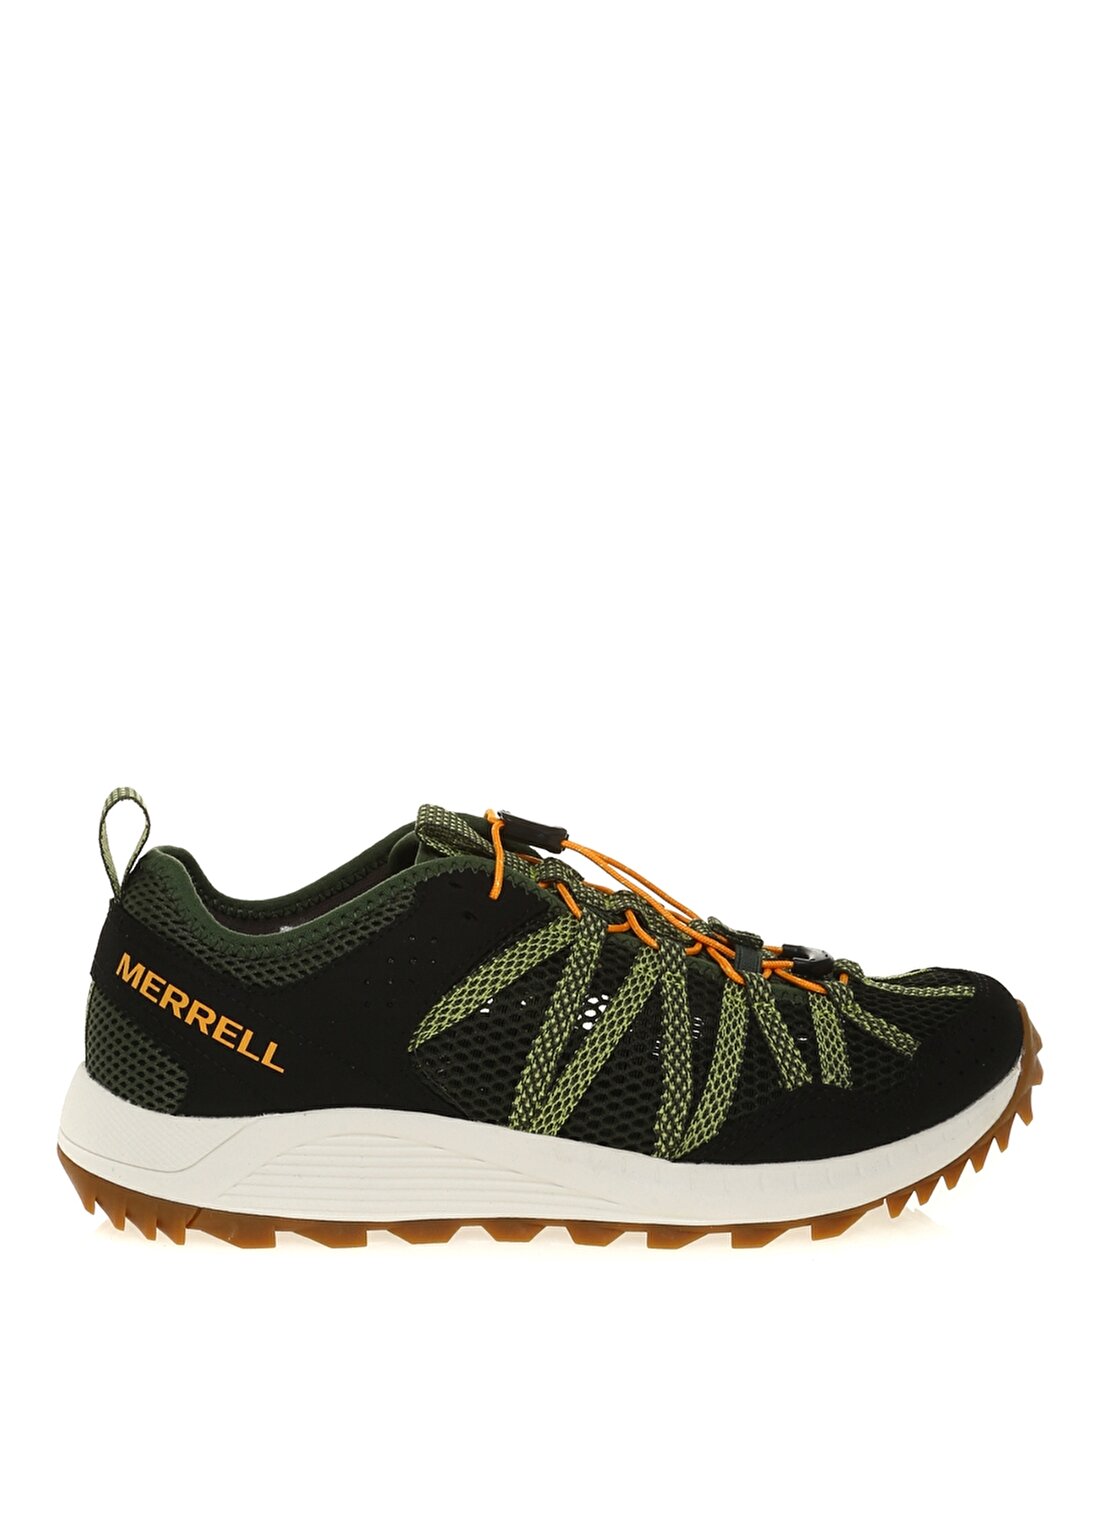 Merrell WILDWOOD AEROSPORT Yeşil Outdoor Ayakkabısı